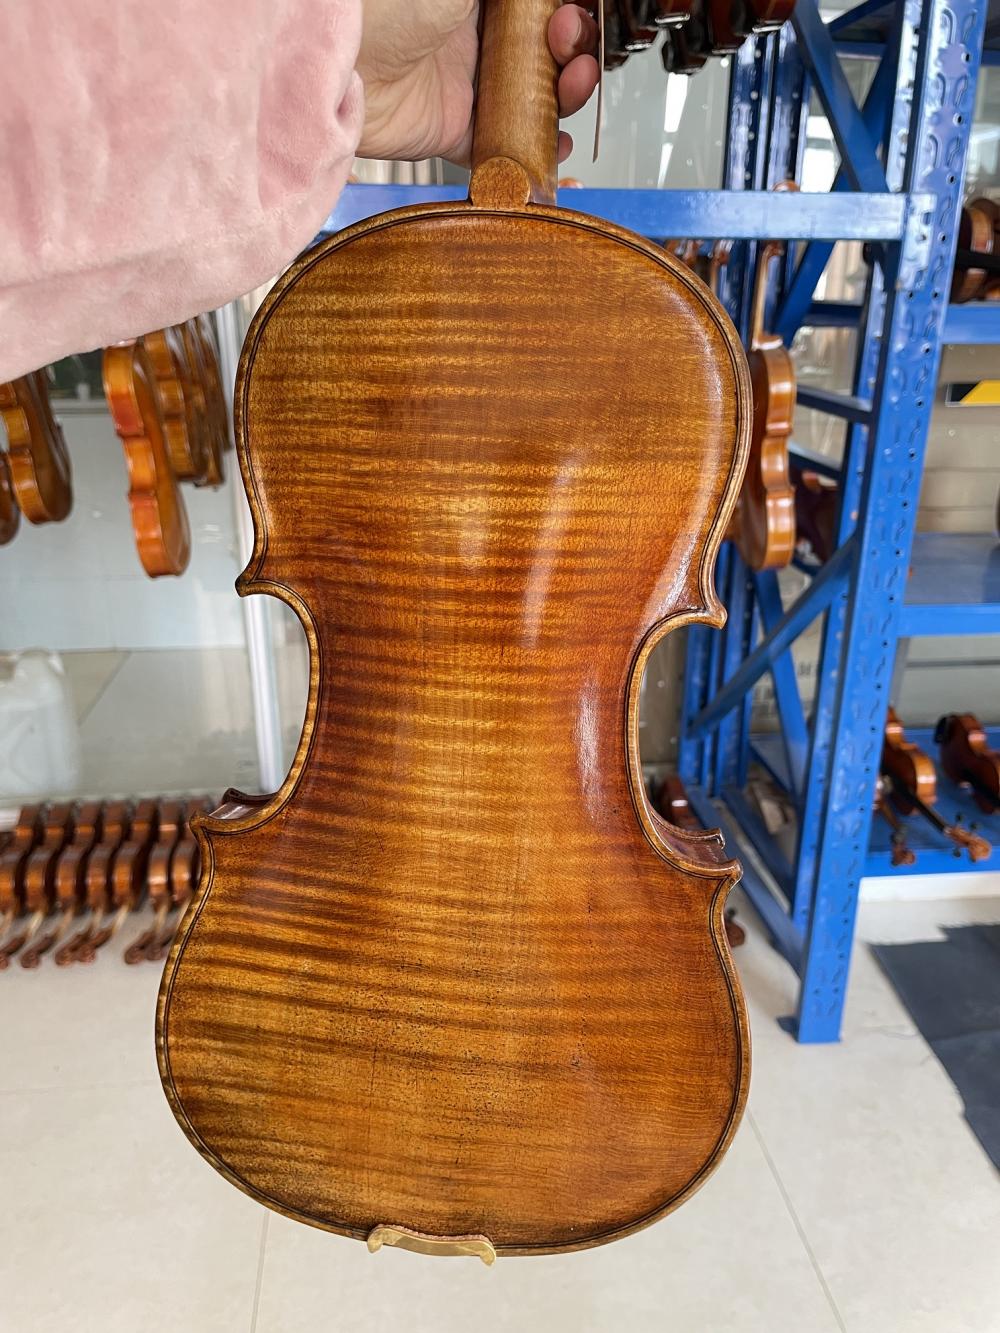 الكمان الخشب الصلب من قبل السيد لوثييه الكمان المصنوع يدويًا للأوركسترا